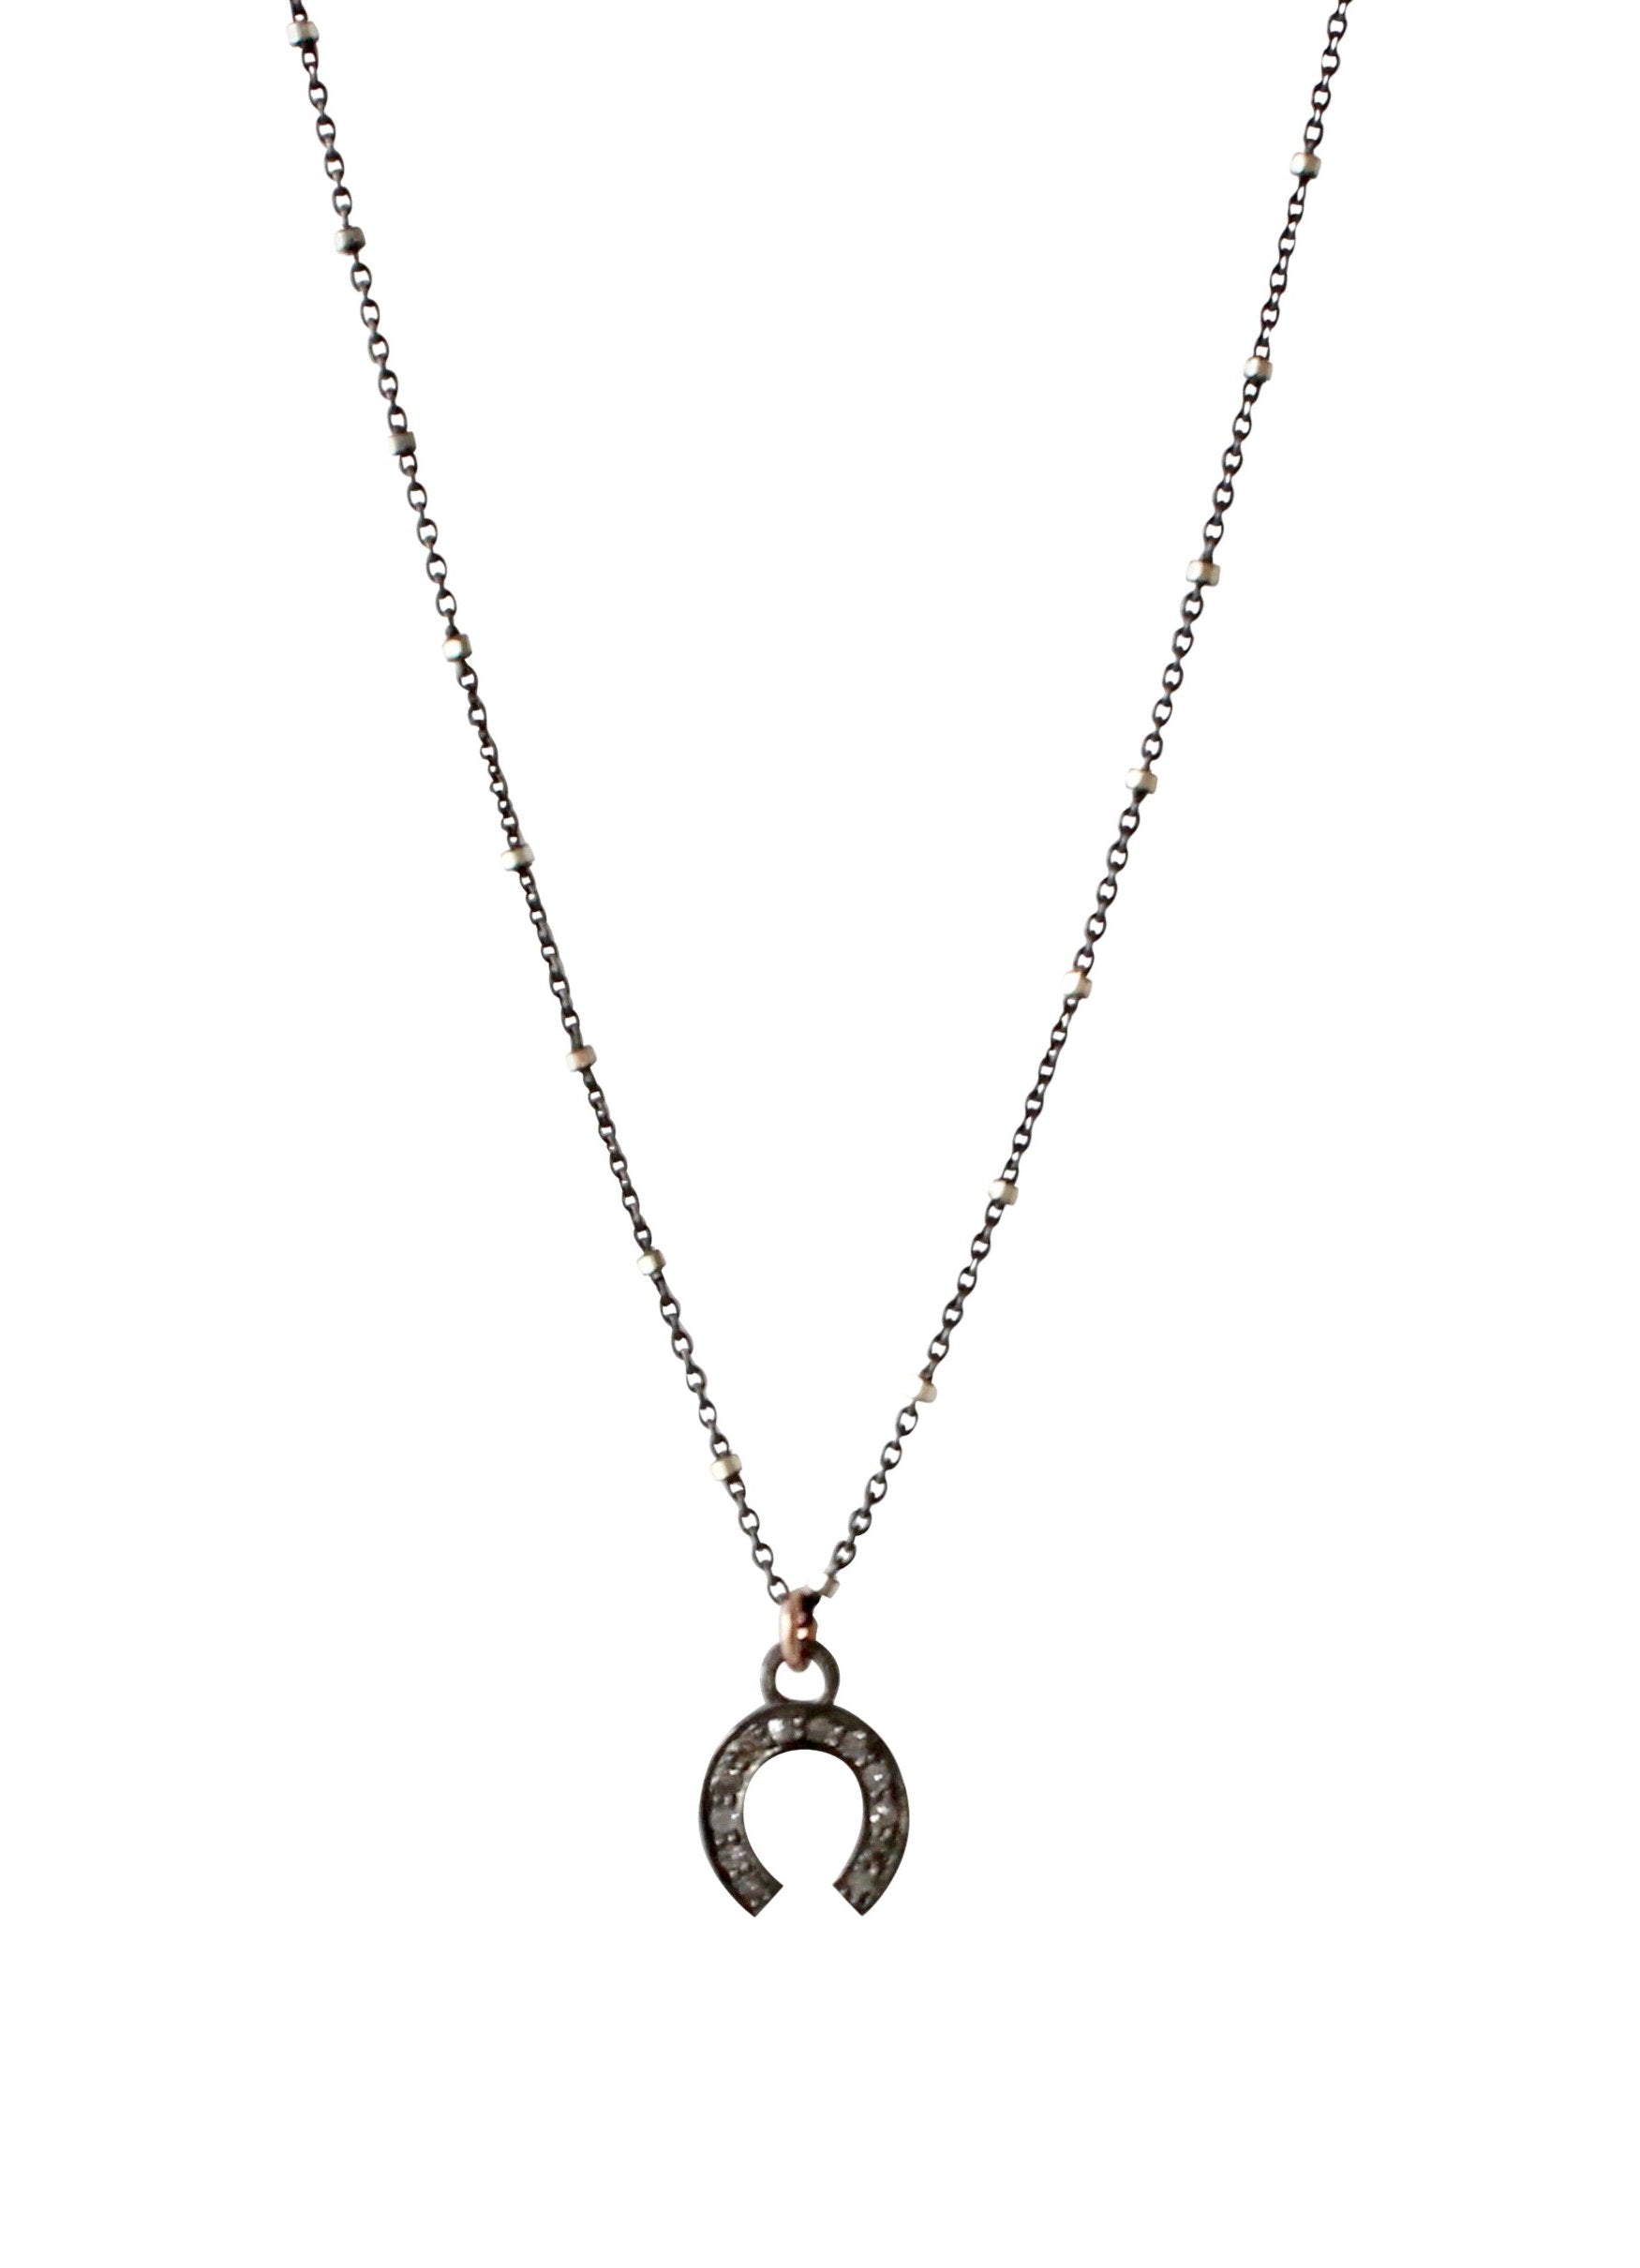 Pave Diamond Horse Shoe Charm Necklace